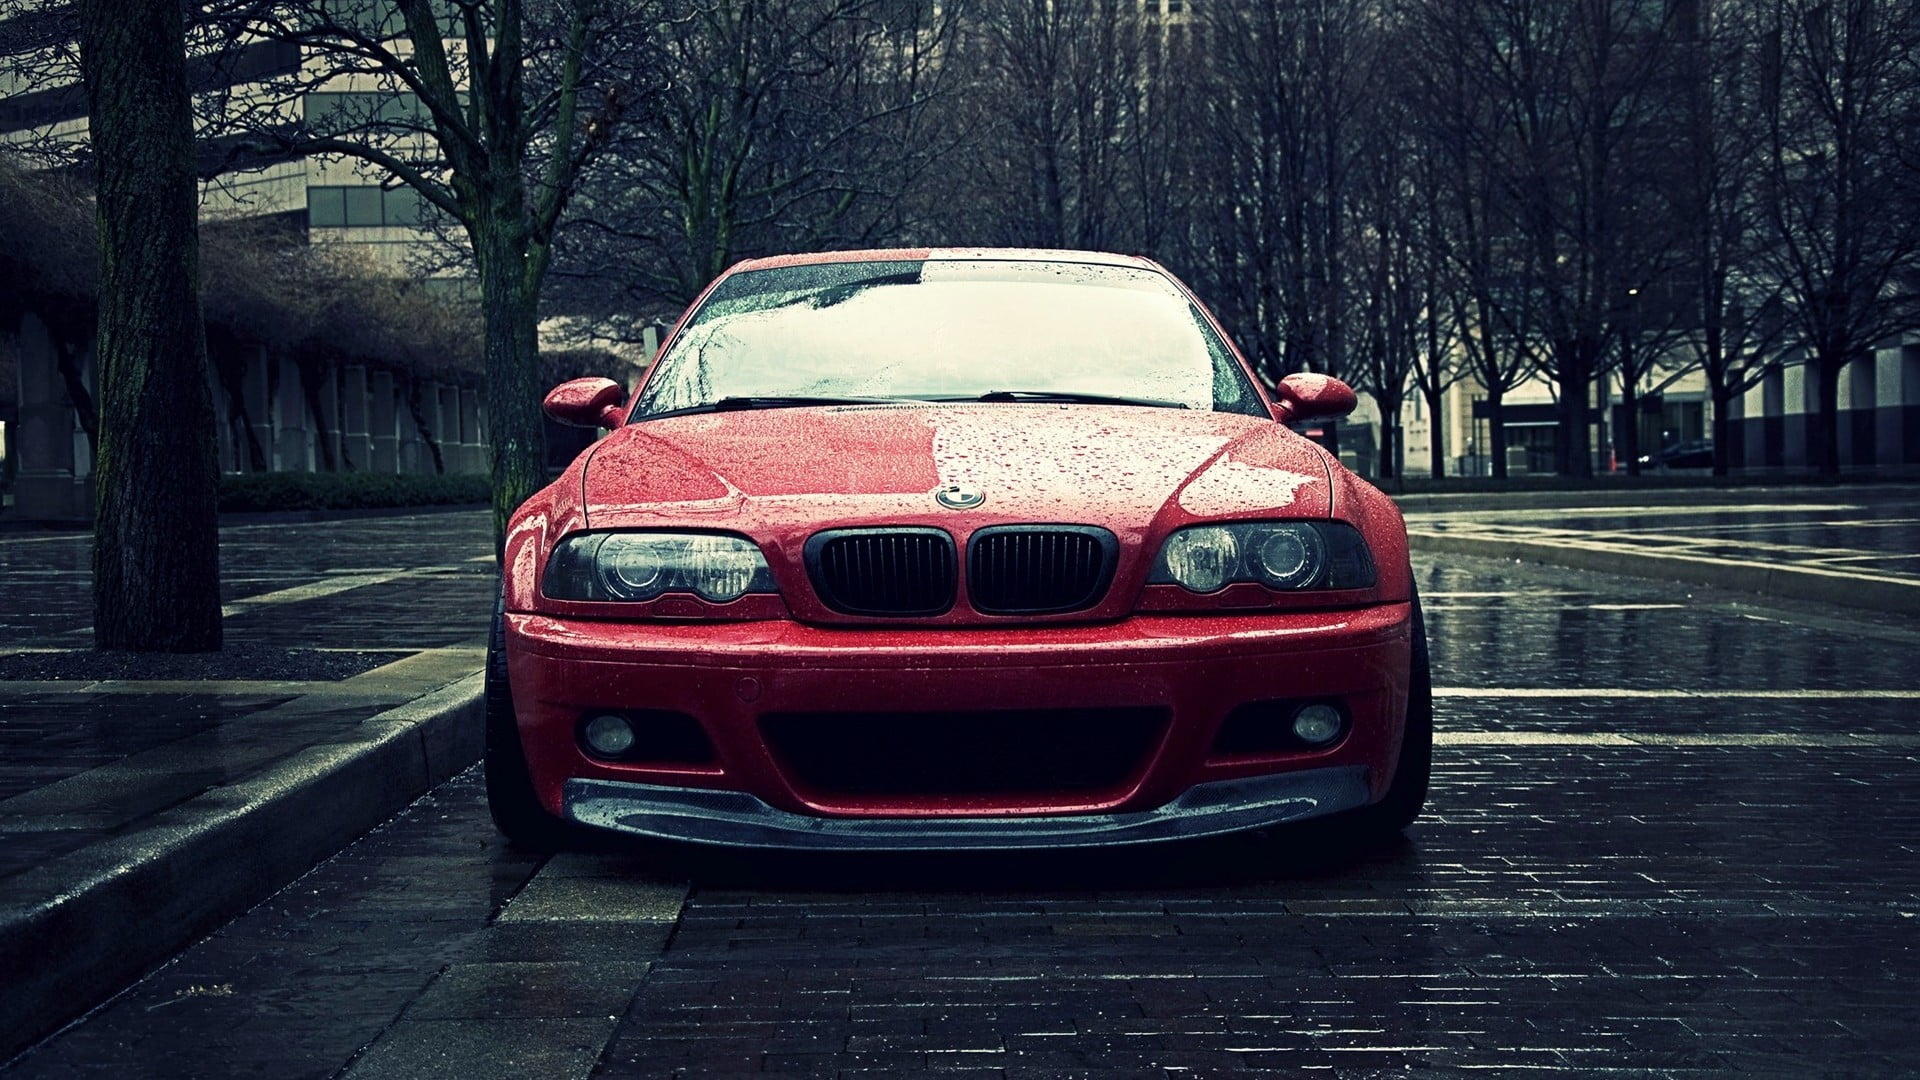 red BMW car, BMW, car, urban, city